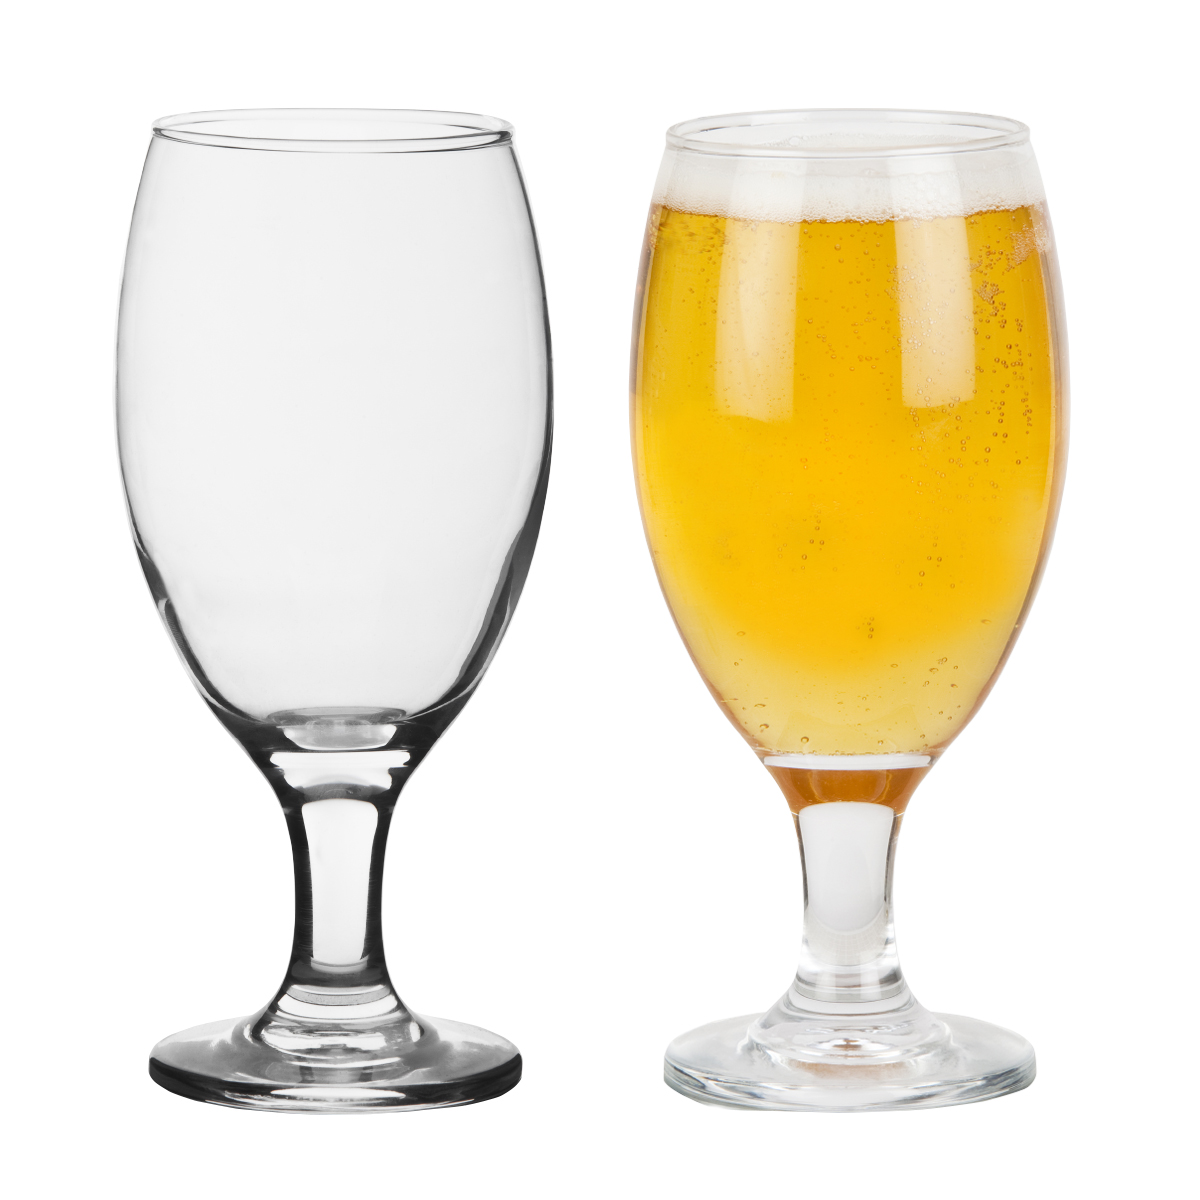 אמברג - כוס בירה עם רגל.
נפח 410 מ”ל.
מידות הכוס: B68,T68,H178 מ”מ.